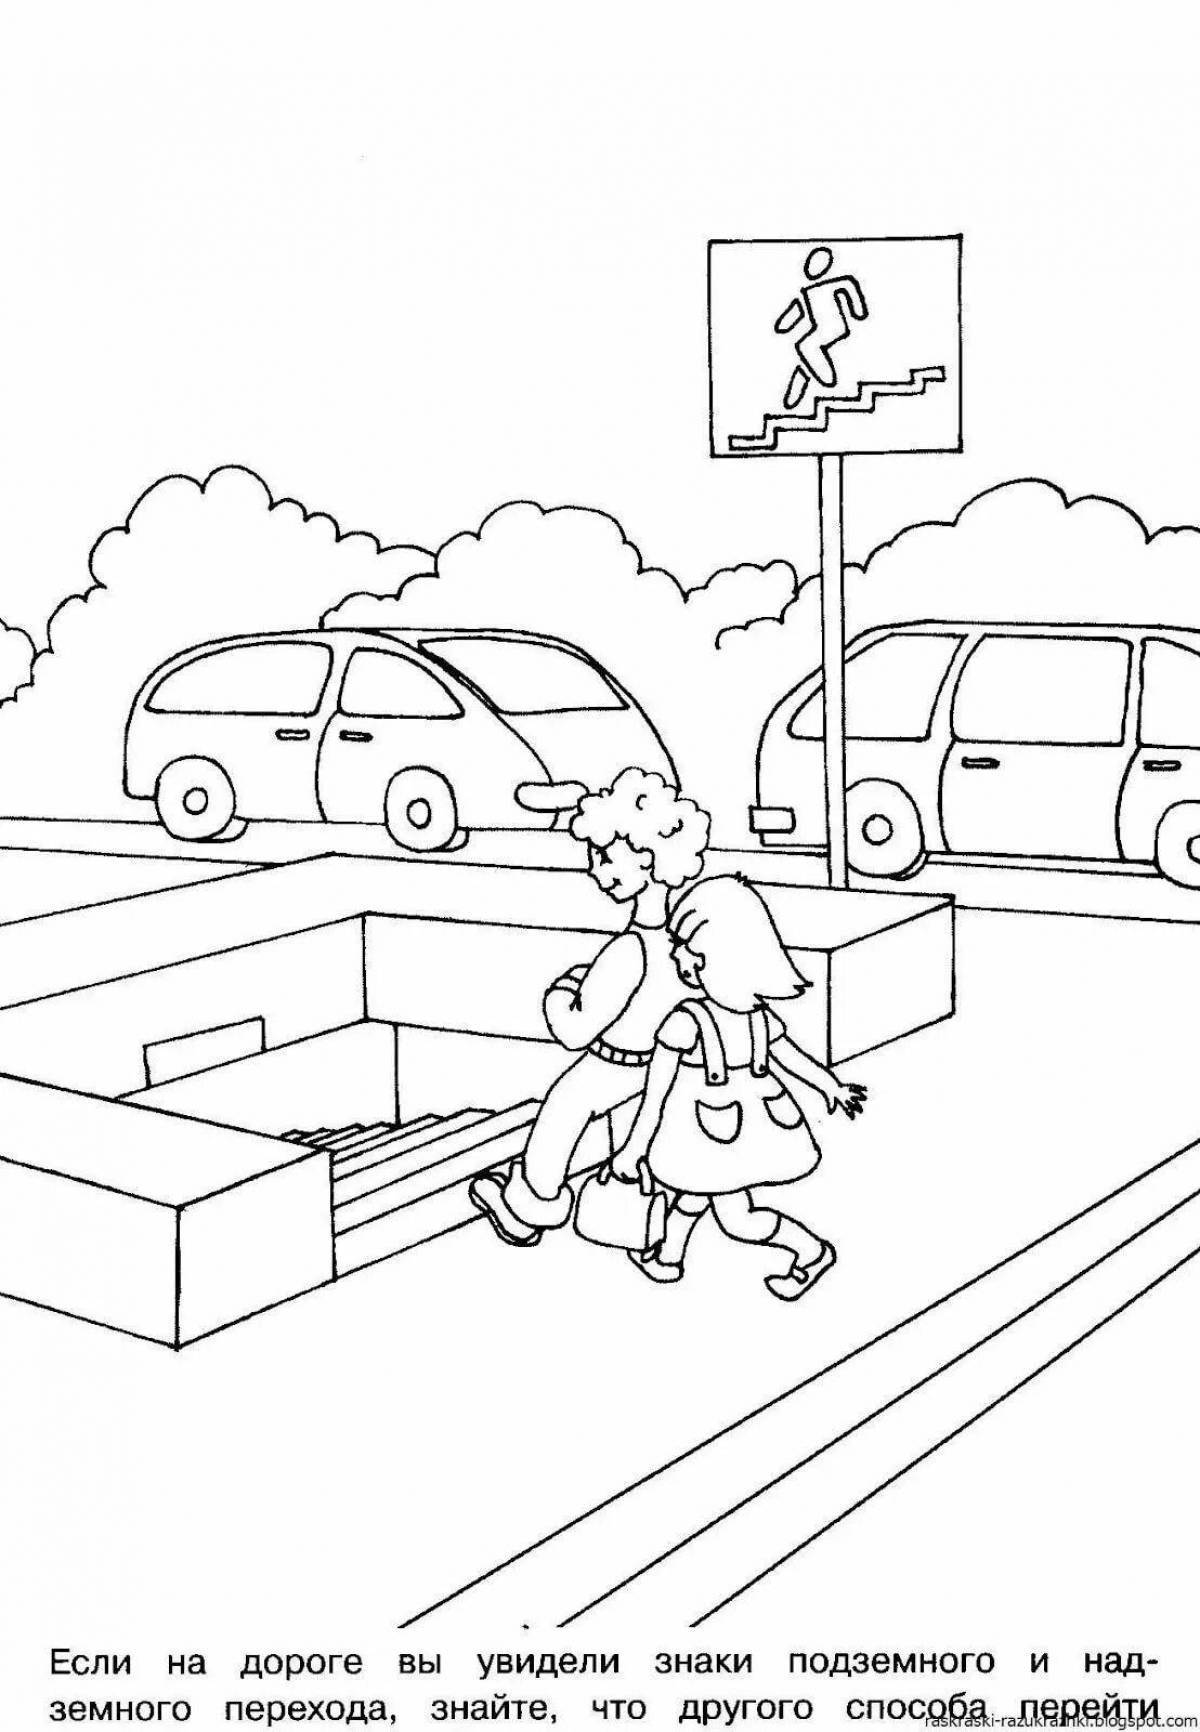 Привлекательные правила дорожного движения для школьников